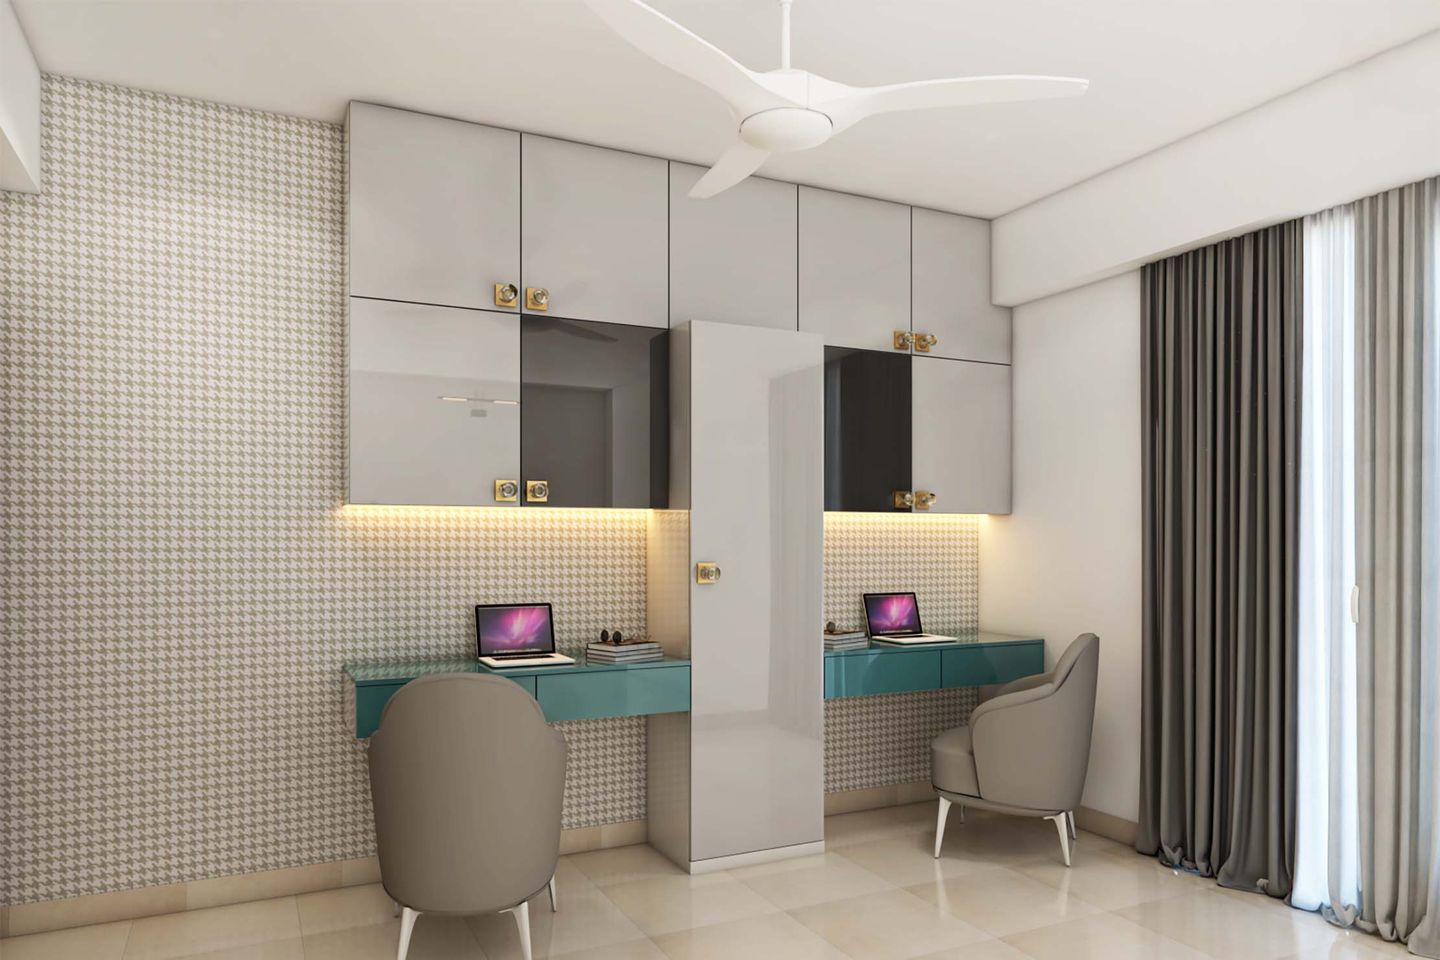 Grey-Themed Home Office Design With Aqua-Blue Desks - Livspace